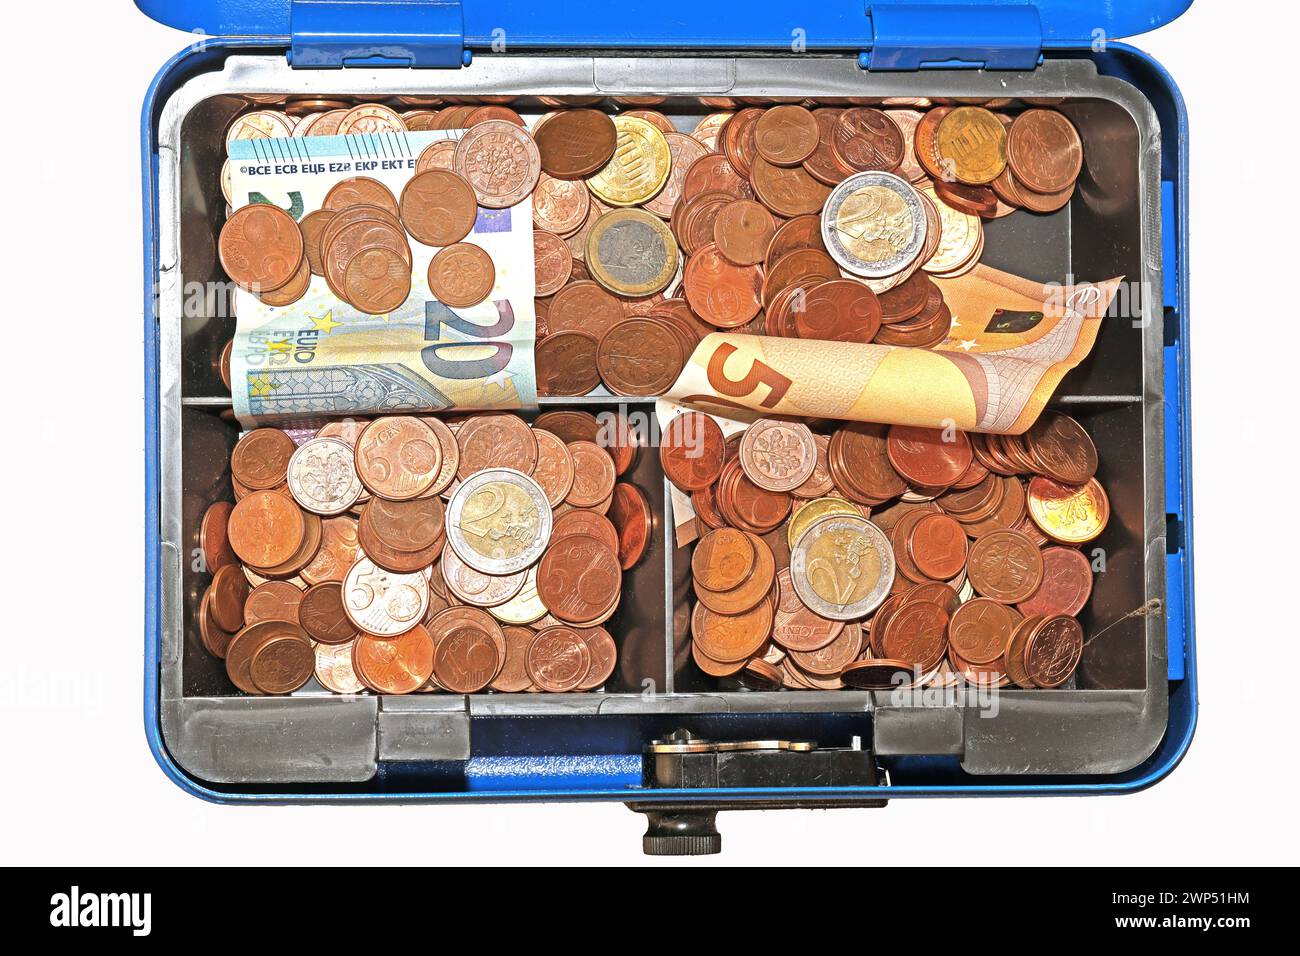 Aufbewahren von Bargeld BEARBEITET: Geldscheine und Centmünzen in einer blauen Geldkassette *** immagazzinando banconote PROCESSATE e monete da cent in una cassa blu Foto Stock